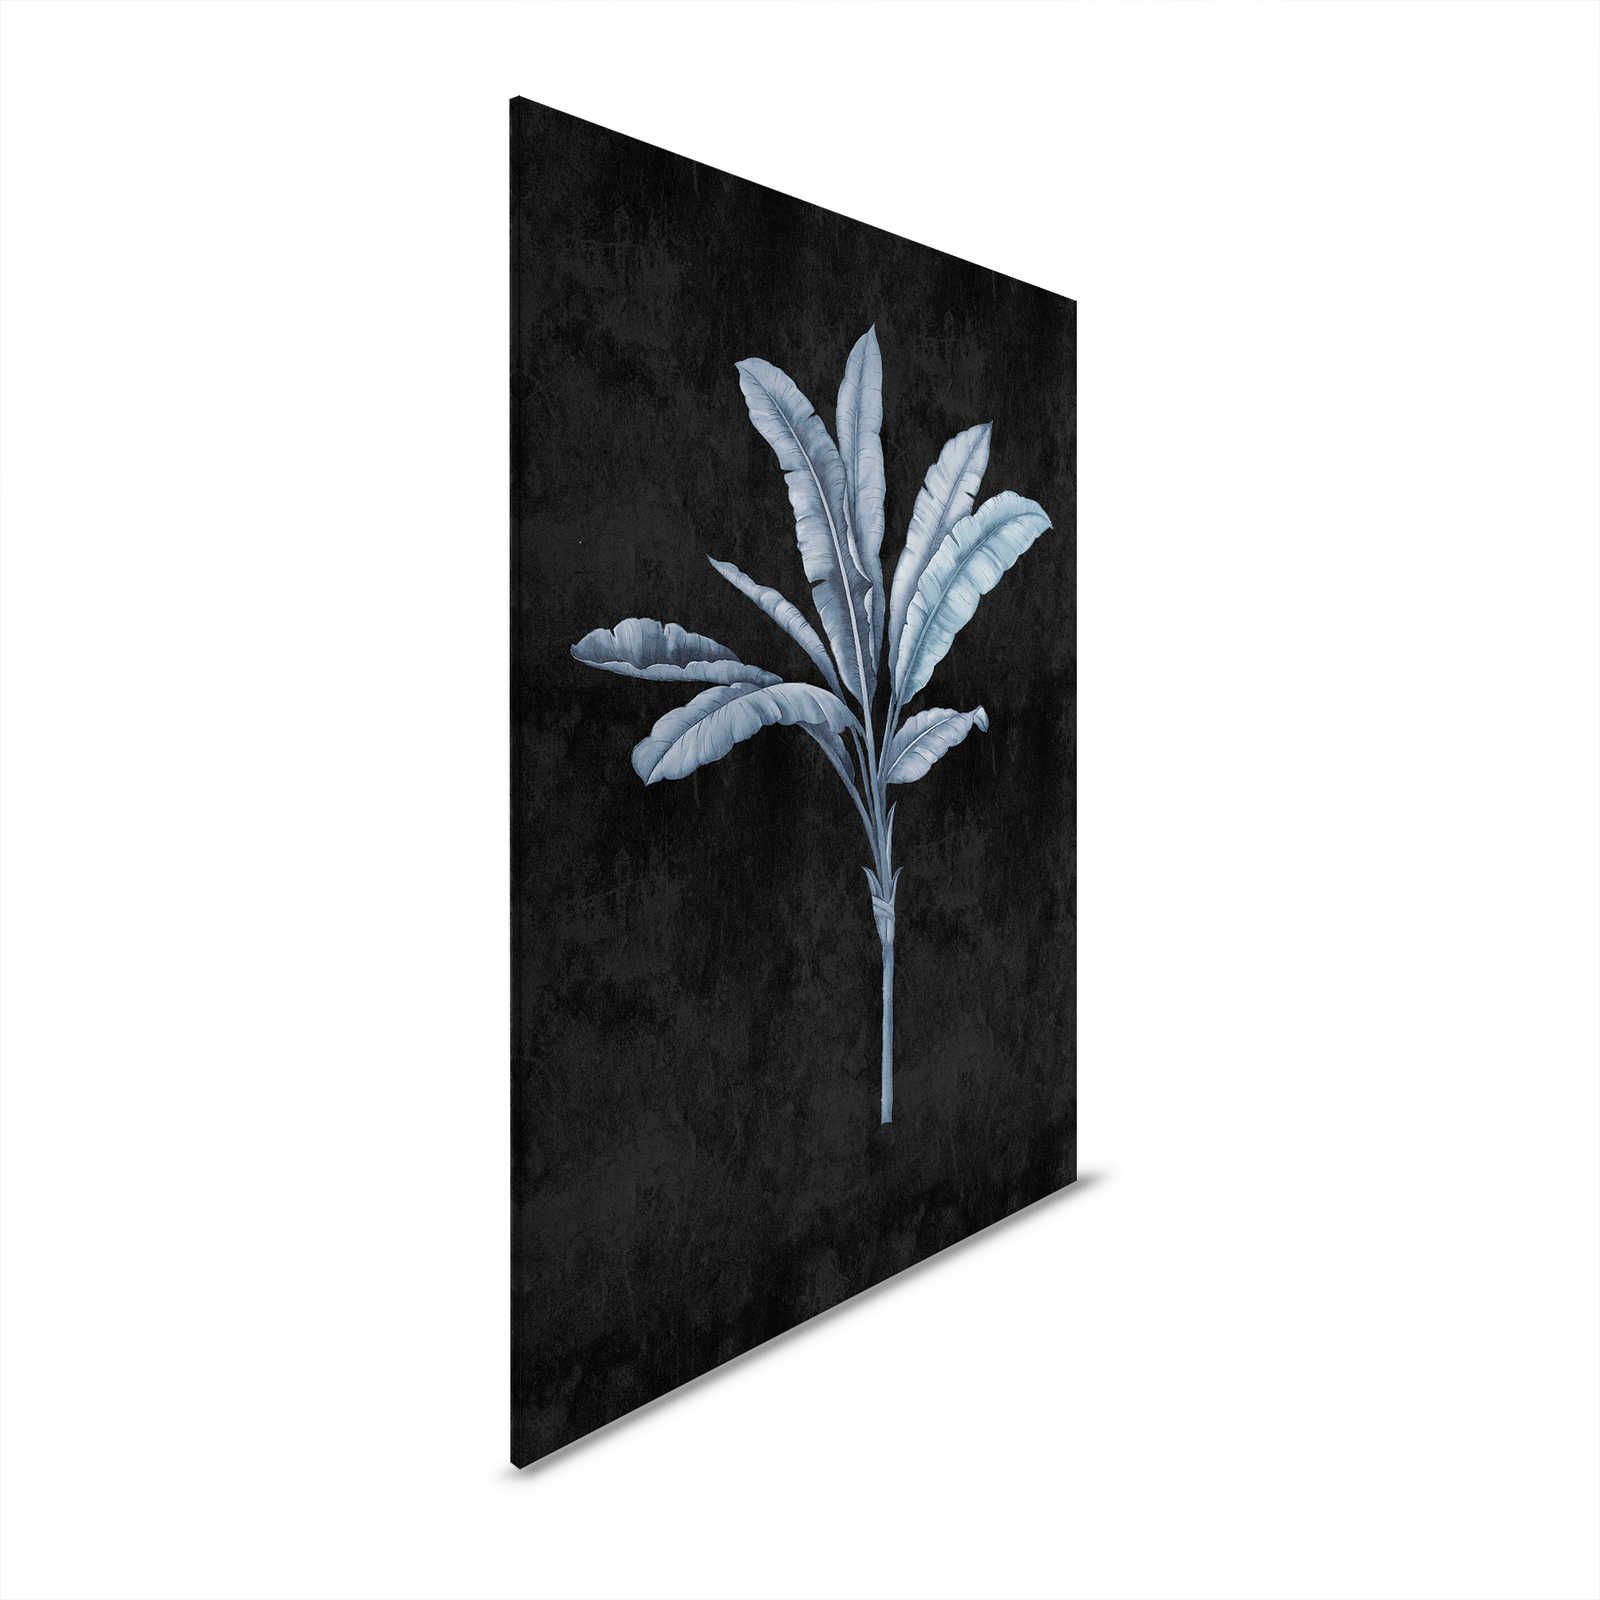 Fiji 2 - Quadro su tela nero con motivo di palme blu e grigio - 0,60 m x 0,90 m
